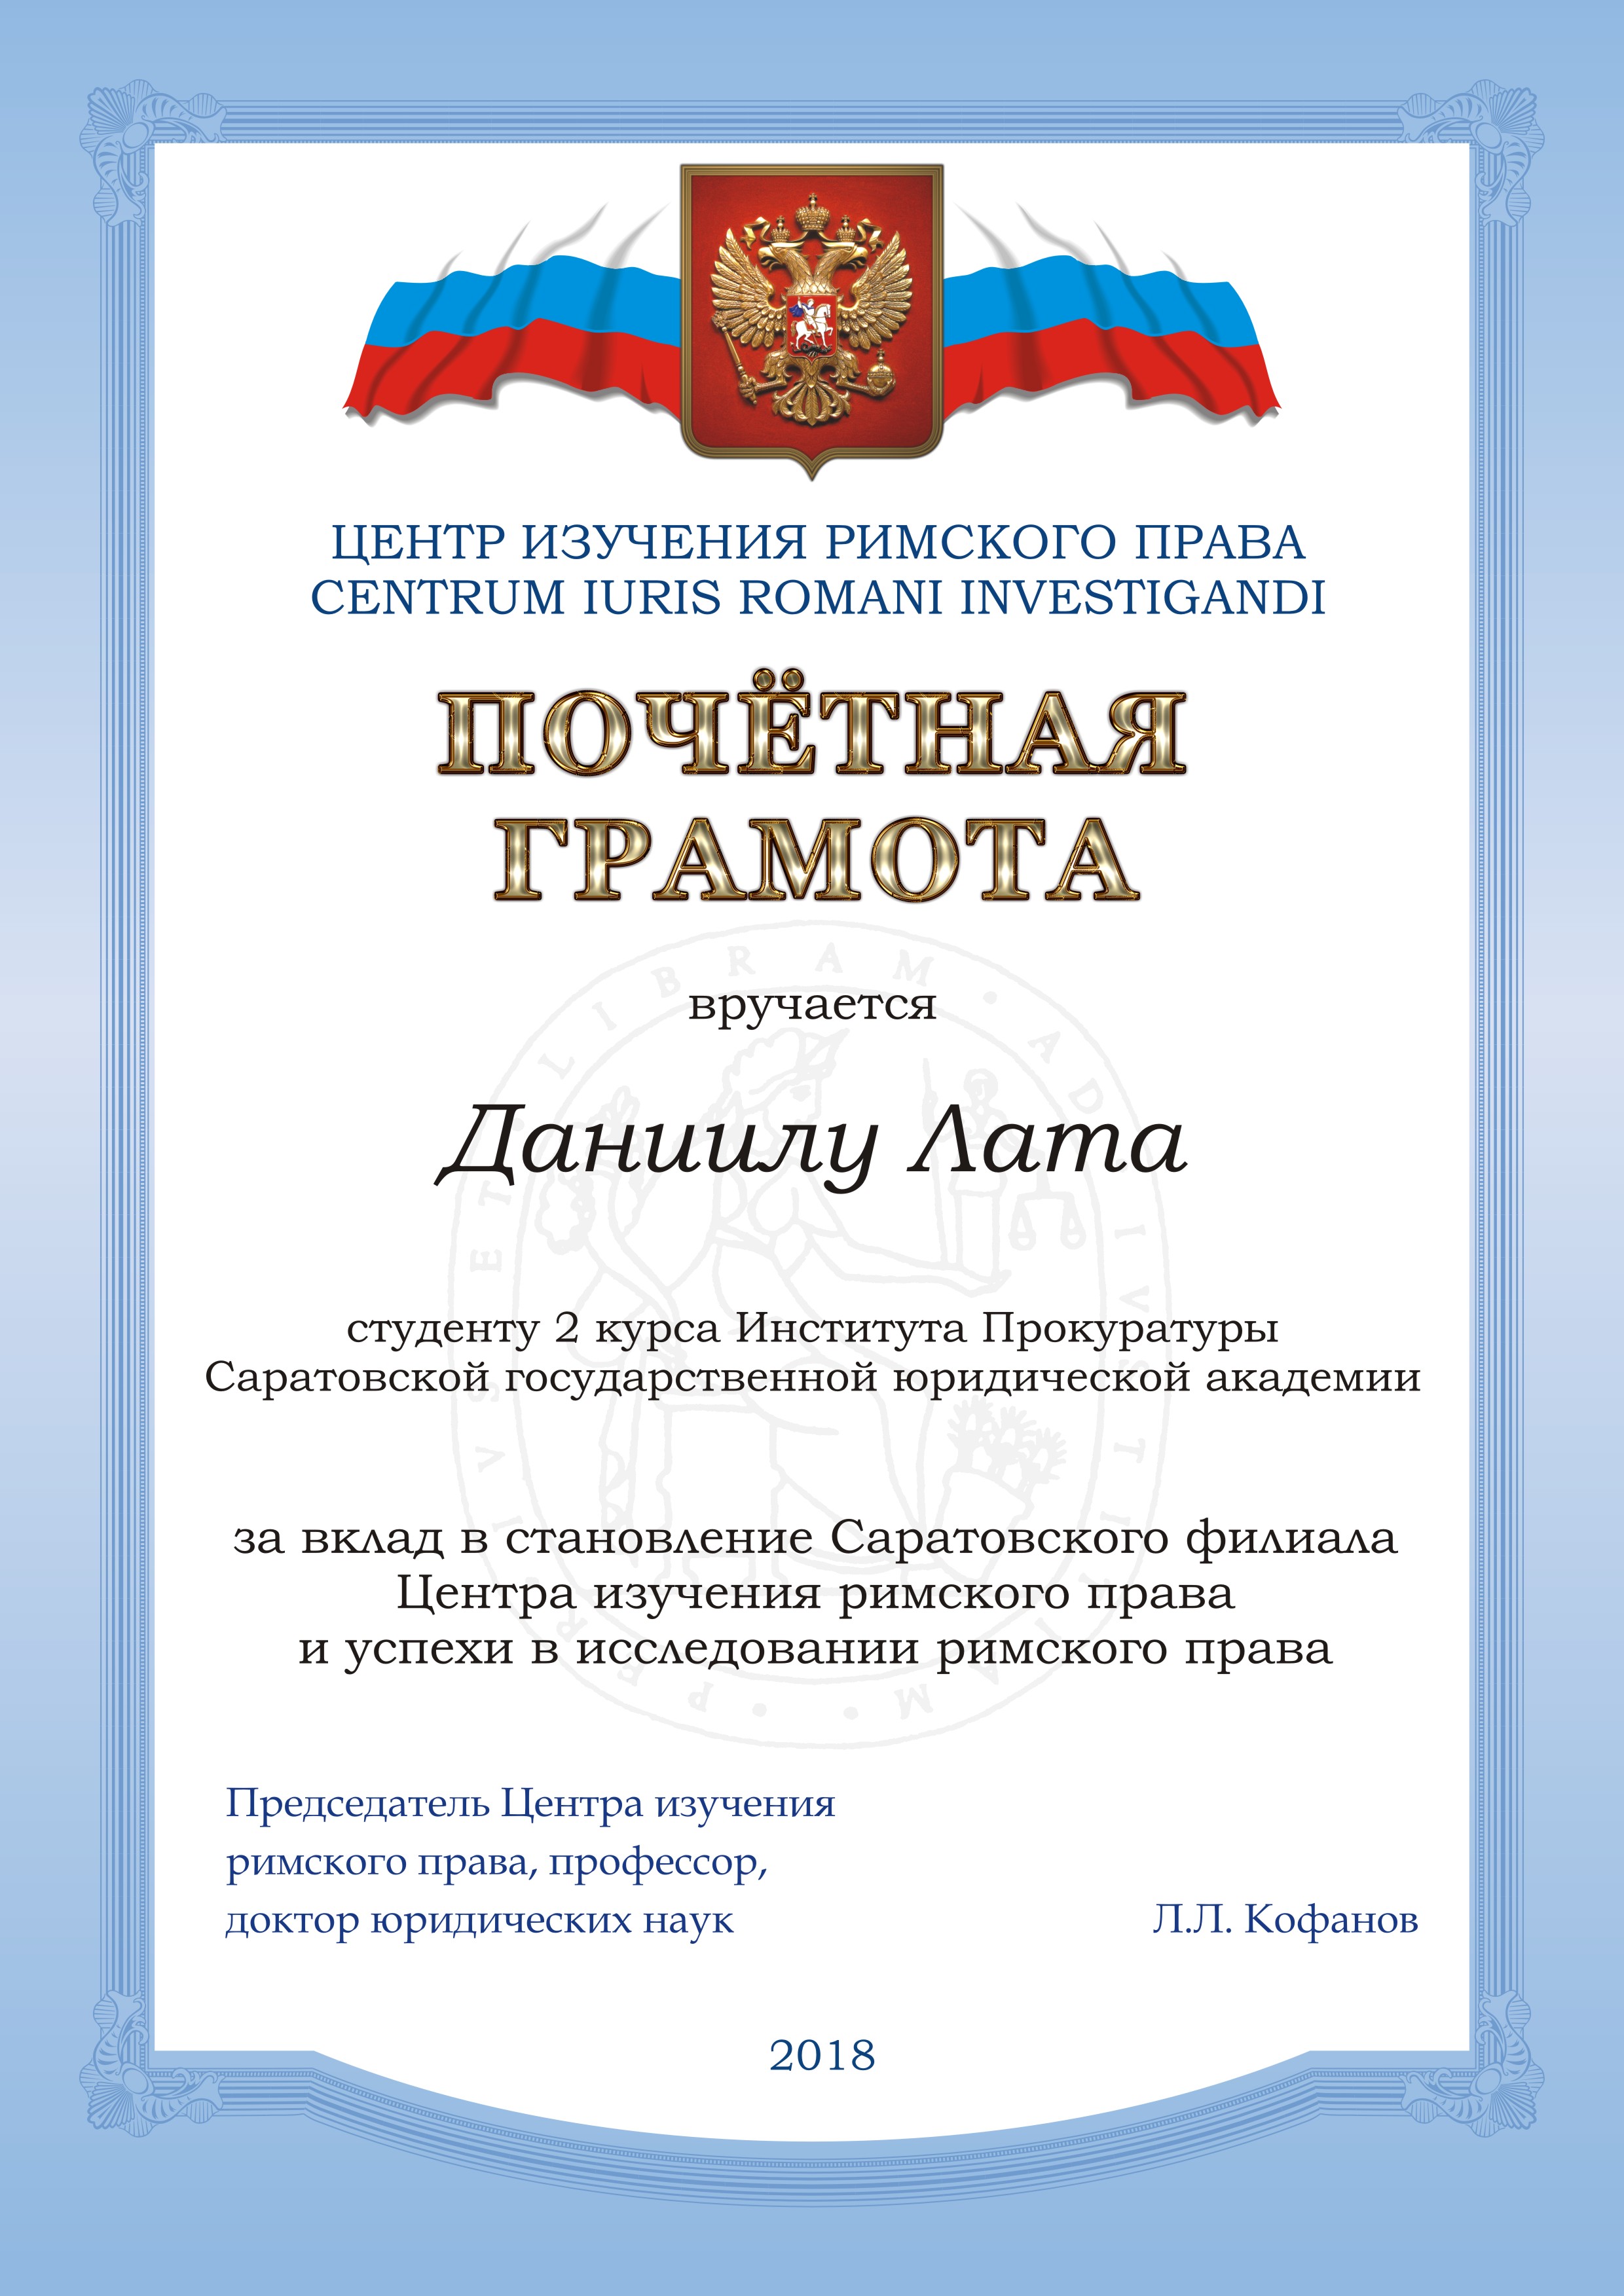 Доклад: Рецепция римского права в современном законодательстве РФ о гражданстве